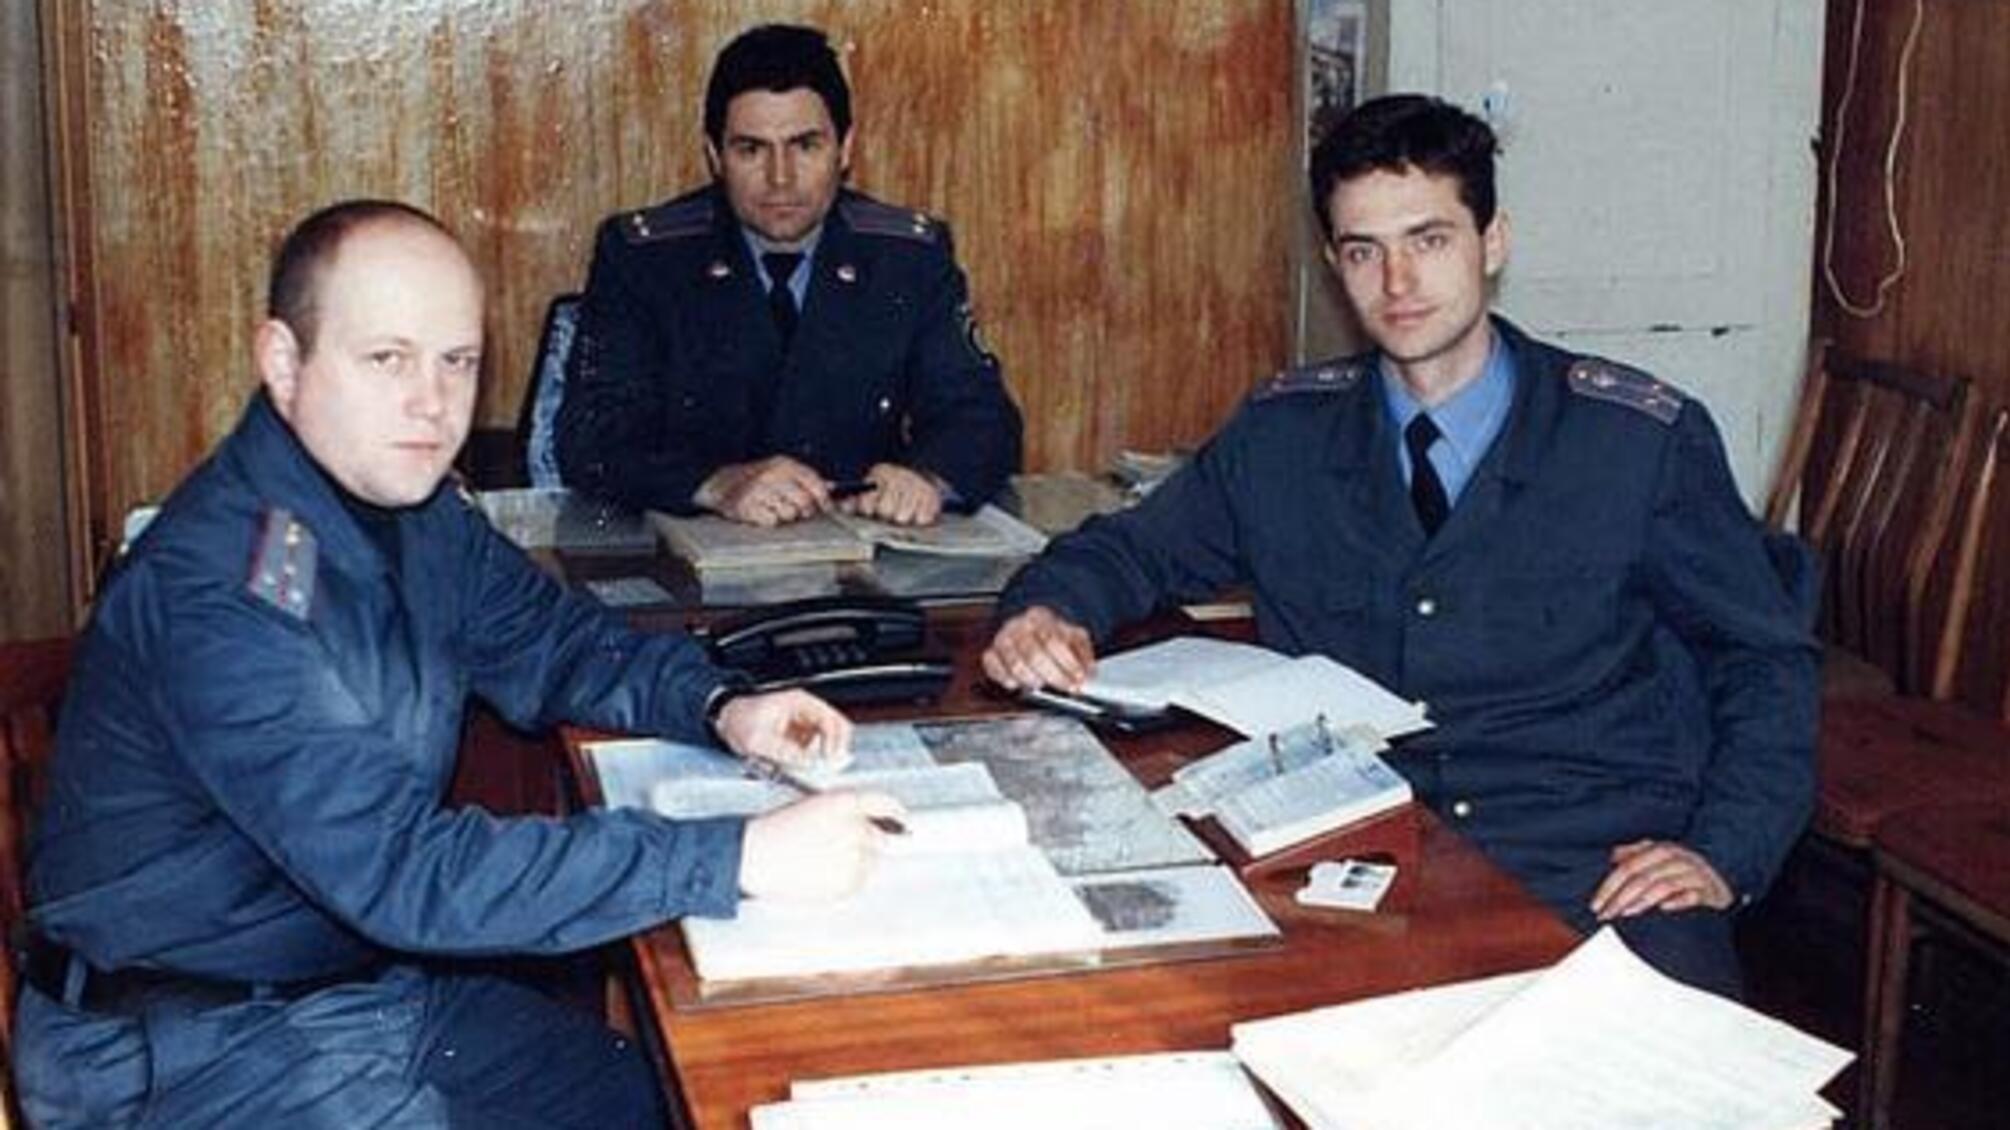 Правоохоронцям, які несли службу в зоні чорнобильської катастрофи, присвячується